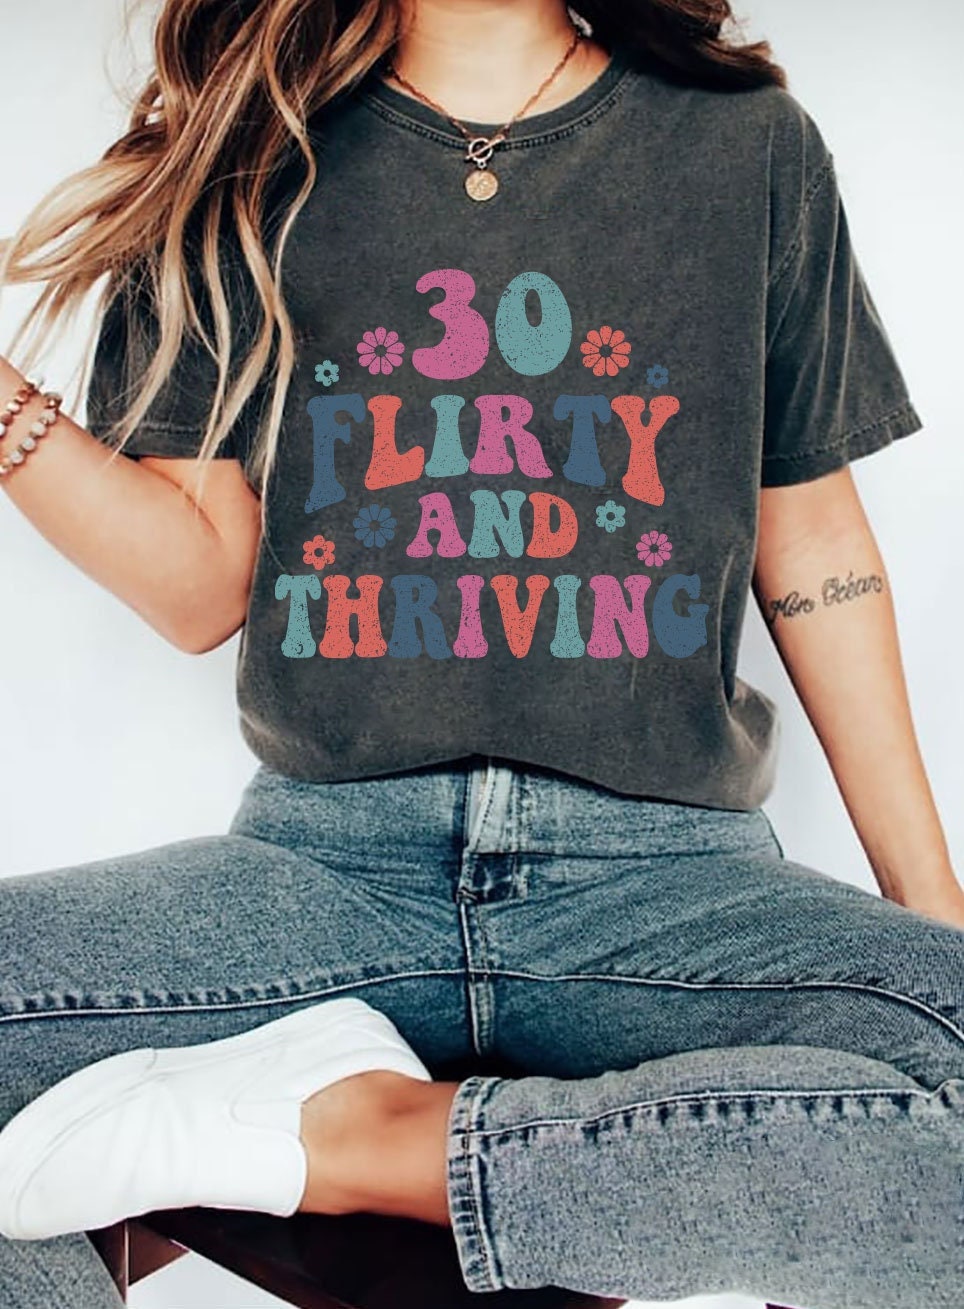 Thirty Flirty And Thriving Birthday Shirt | Sister 30th Birthday Vintage 1993 T Shirt | 30th Birthday Gift For Her | 30 Birthday Tee Shirt